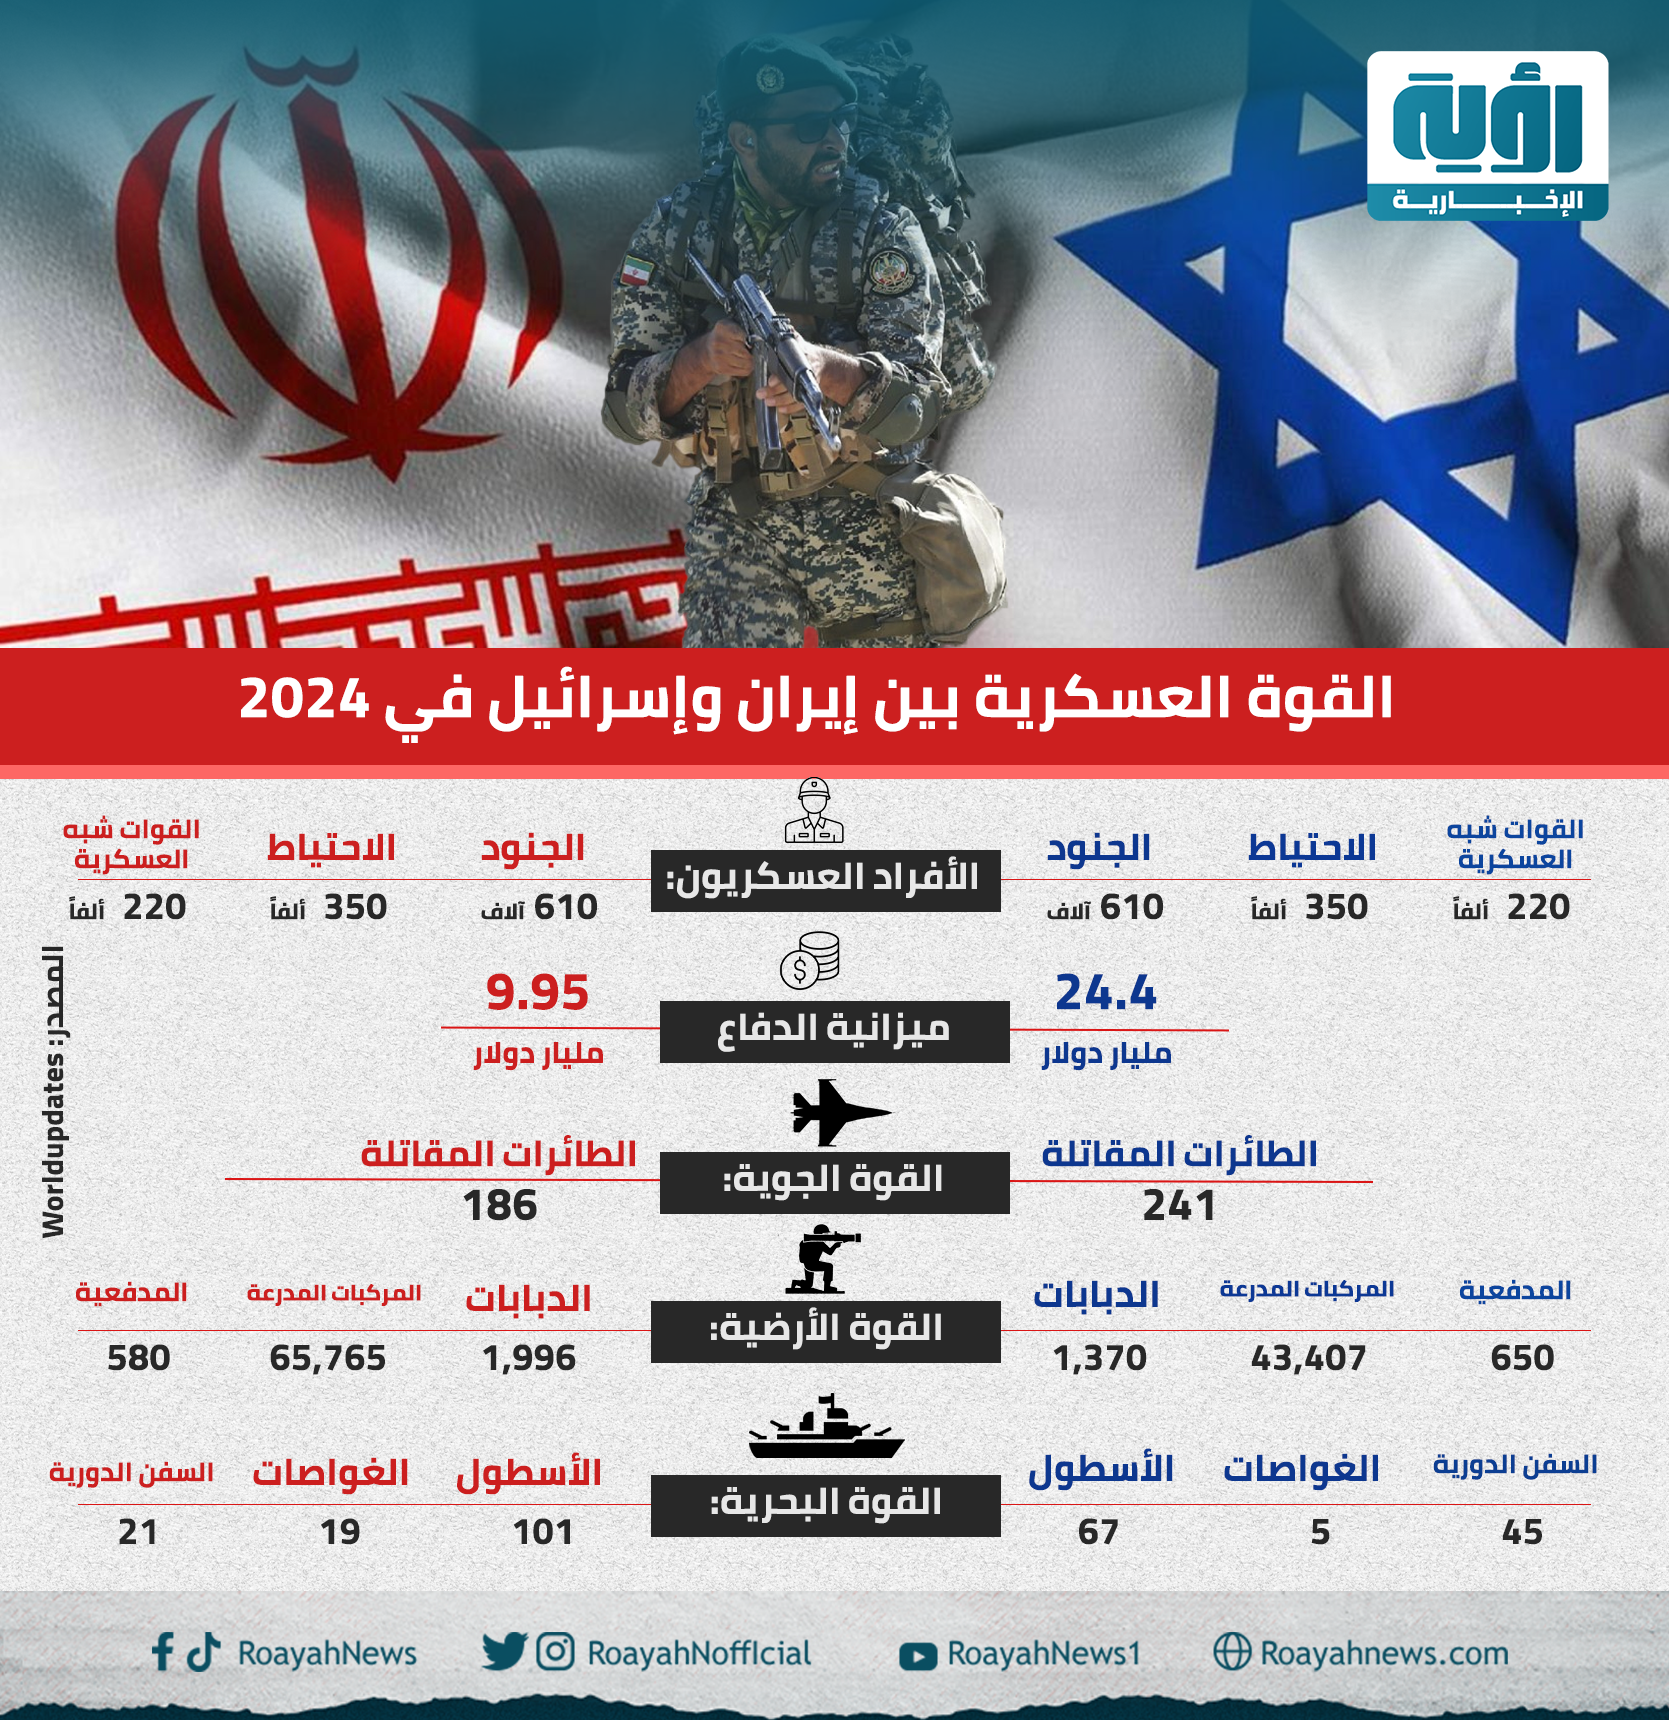 القوة-العسكرية-بين-إيران-وإسرائيل-في-2024